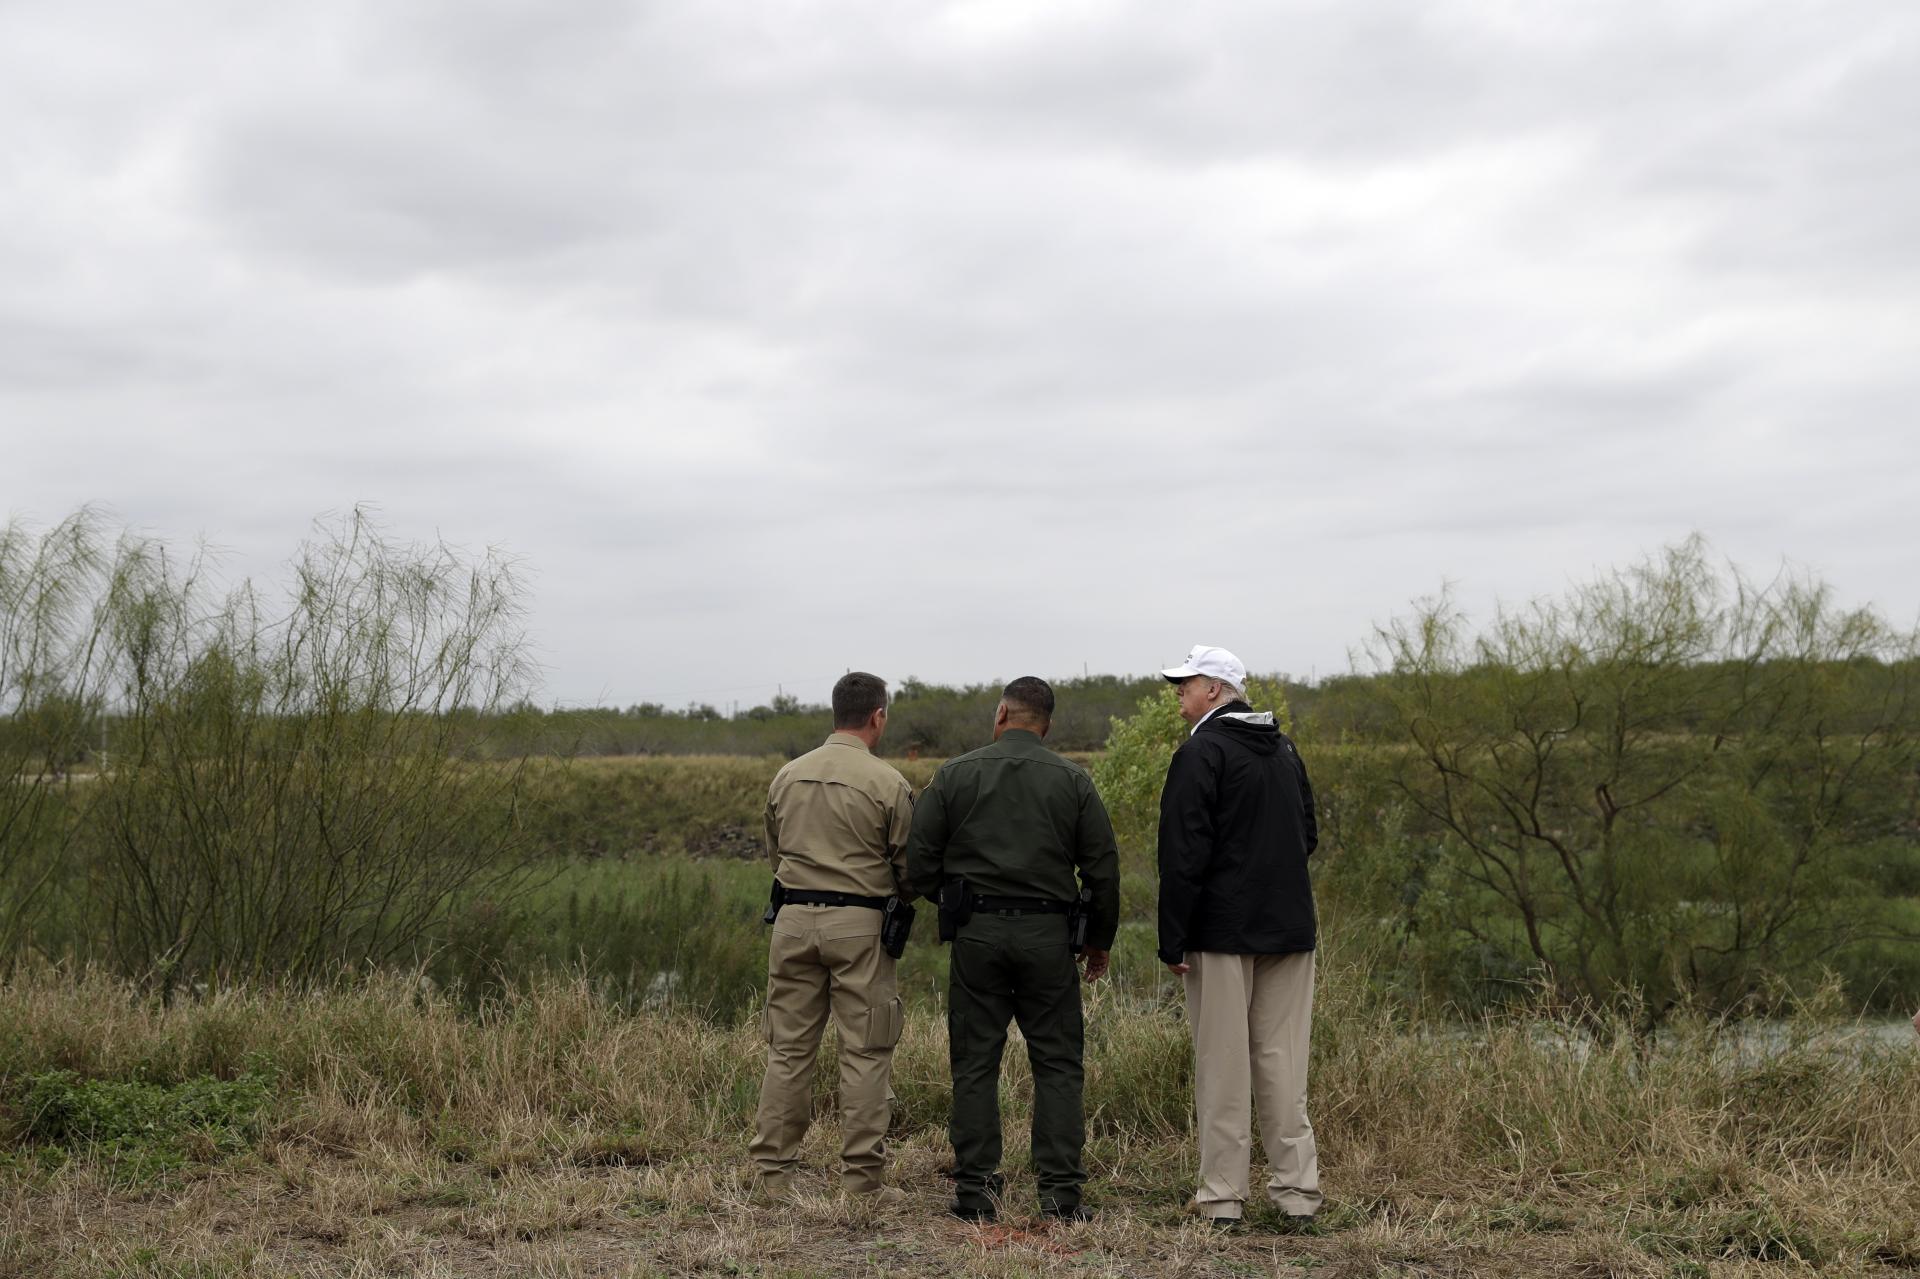 Donald Trump v meste McAllen v Texase diskutuje s miestnymi šerifmi o tom, ako by mohla vyzerať výstavba múru medzi USA a Mexikom.